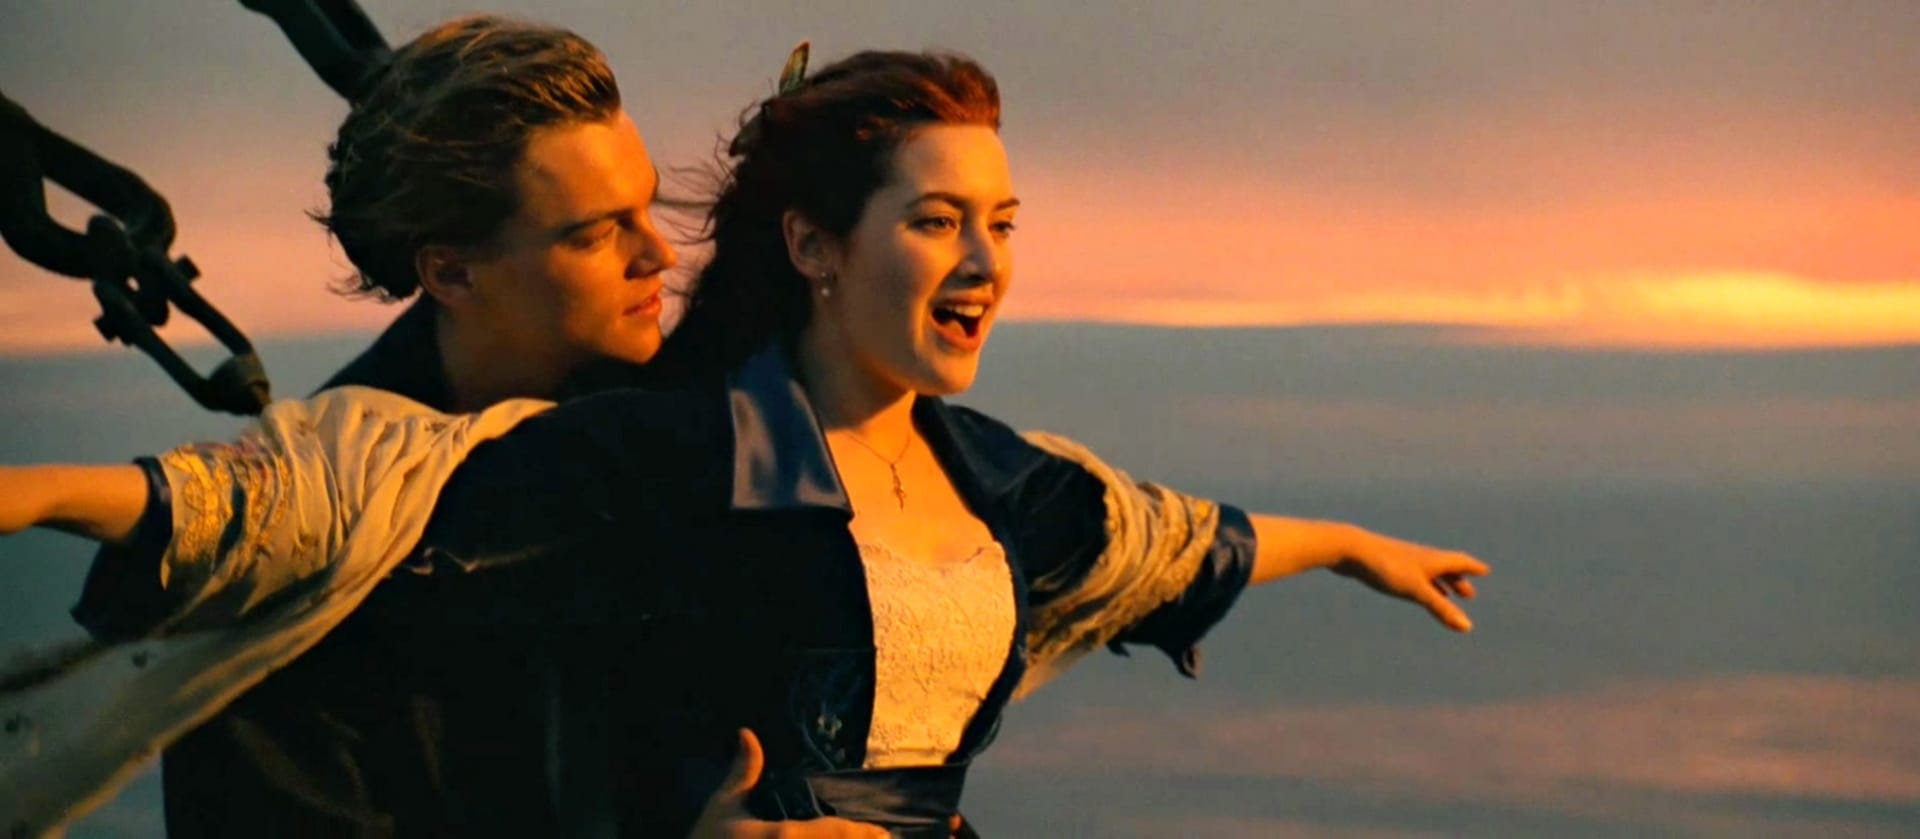 Ikonická scéna z filmu Titanic.